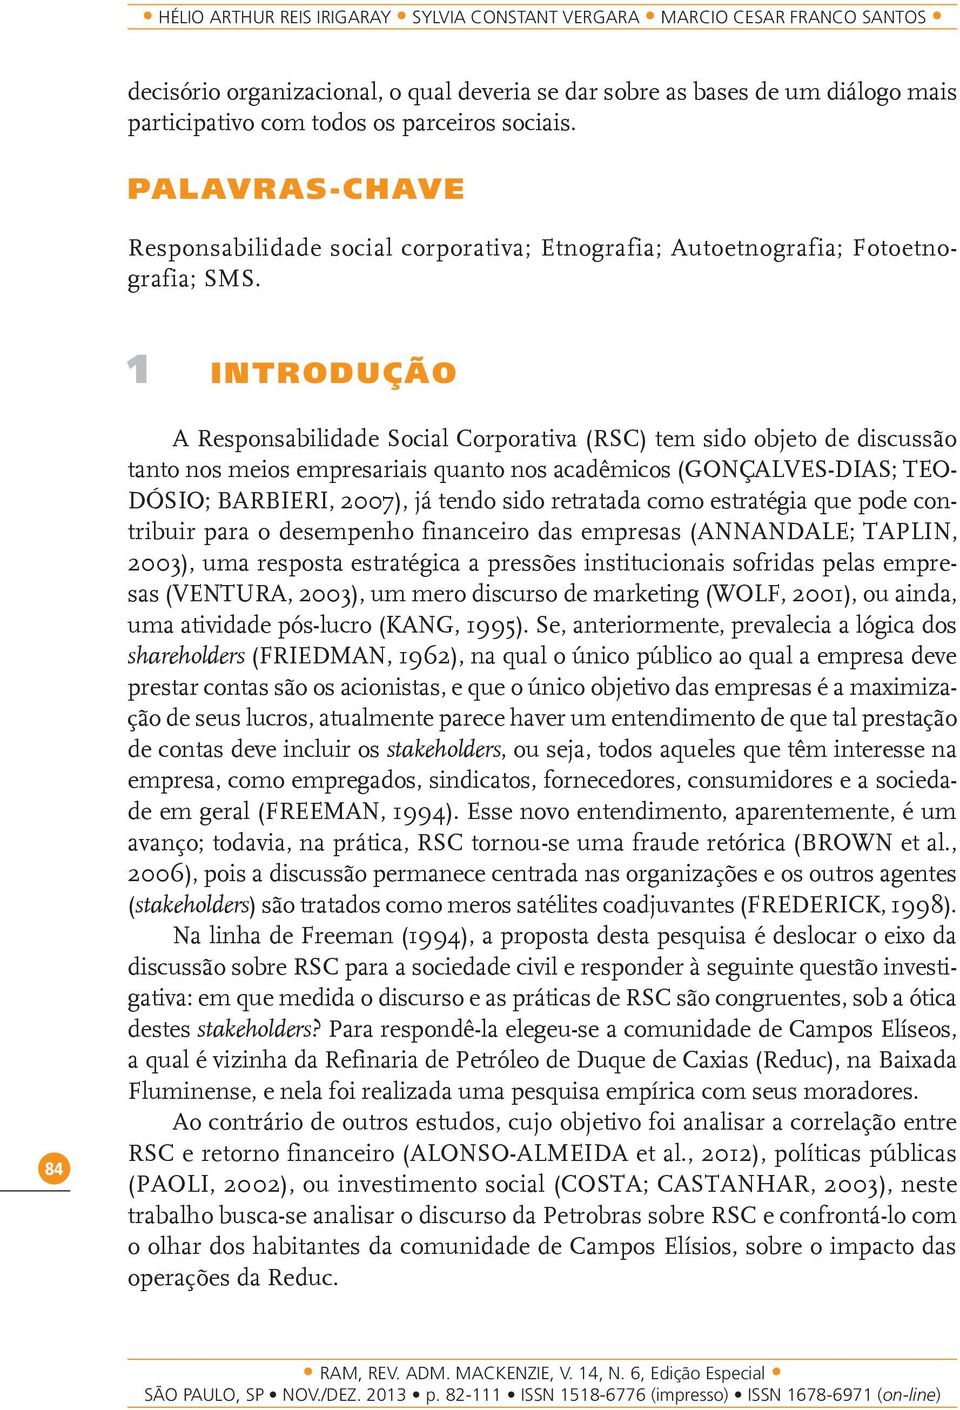 1 Introdução 84 A Responsabilidade Social Corporativa (RSC) tem sido objeto de discussão tanto nos meios empresariais quanto nos acadêmicos (Gonçalves-Dias; TEO- DÓSIO; BARBIERI, 2007), já tendo sido